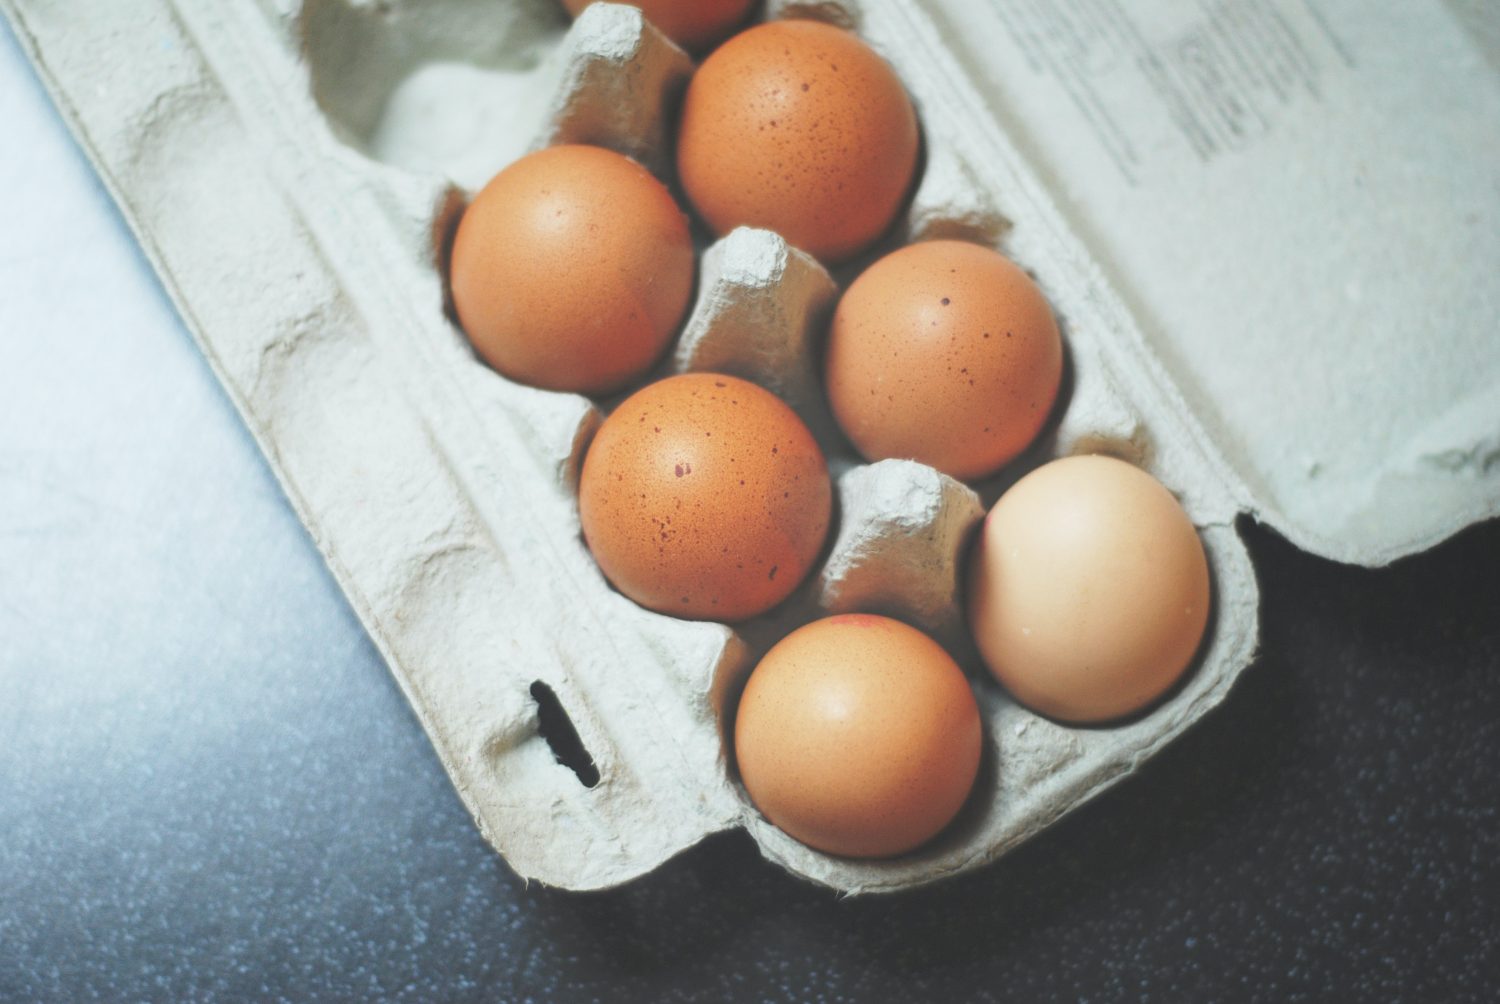 eggs-in-carton